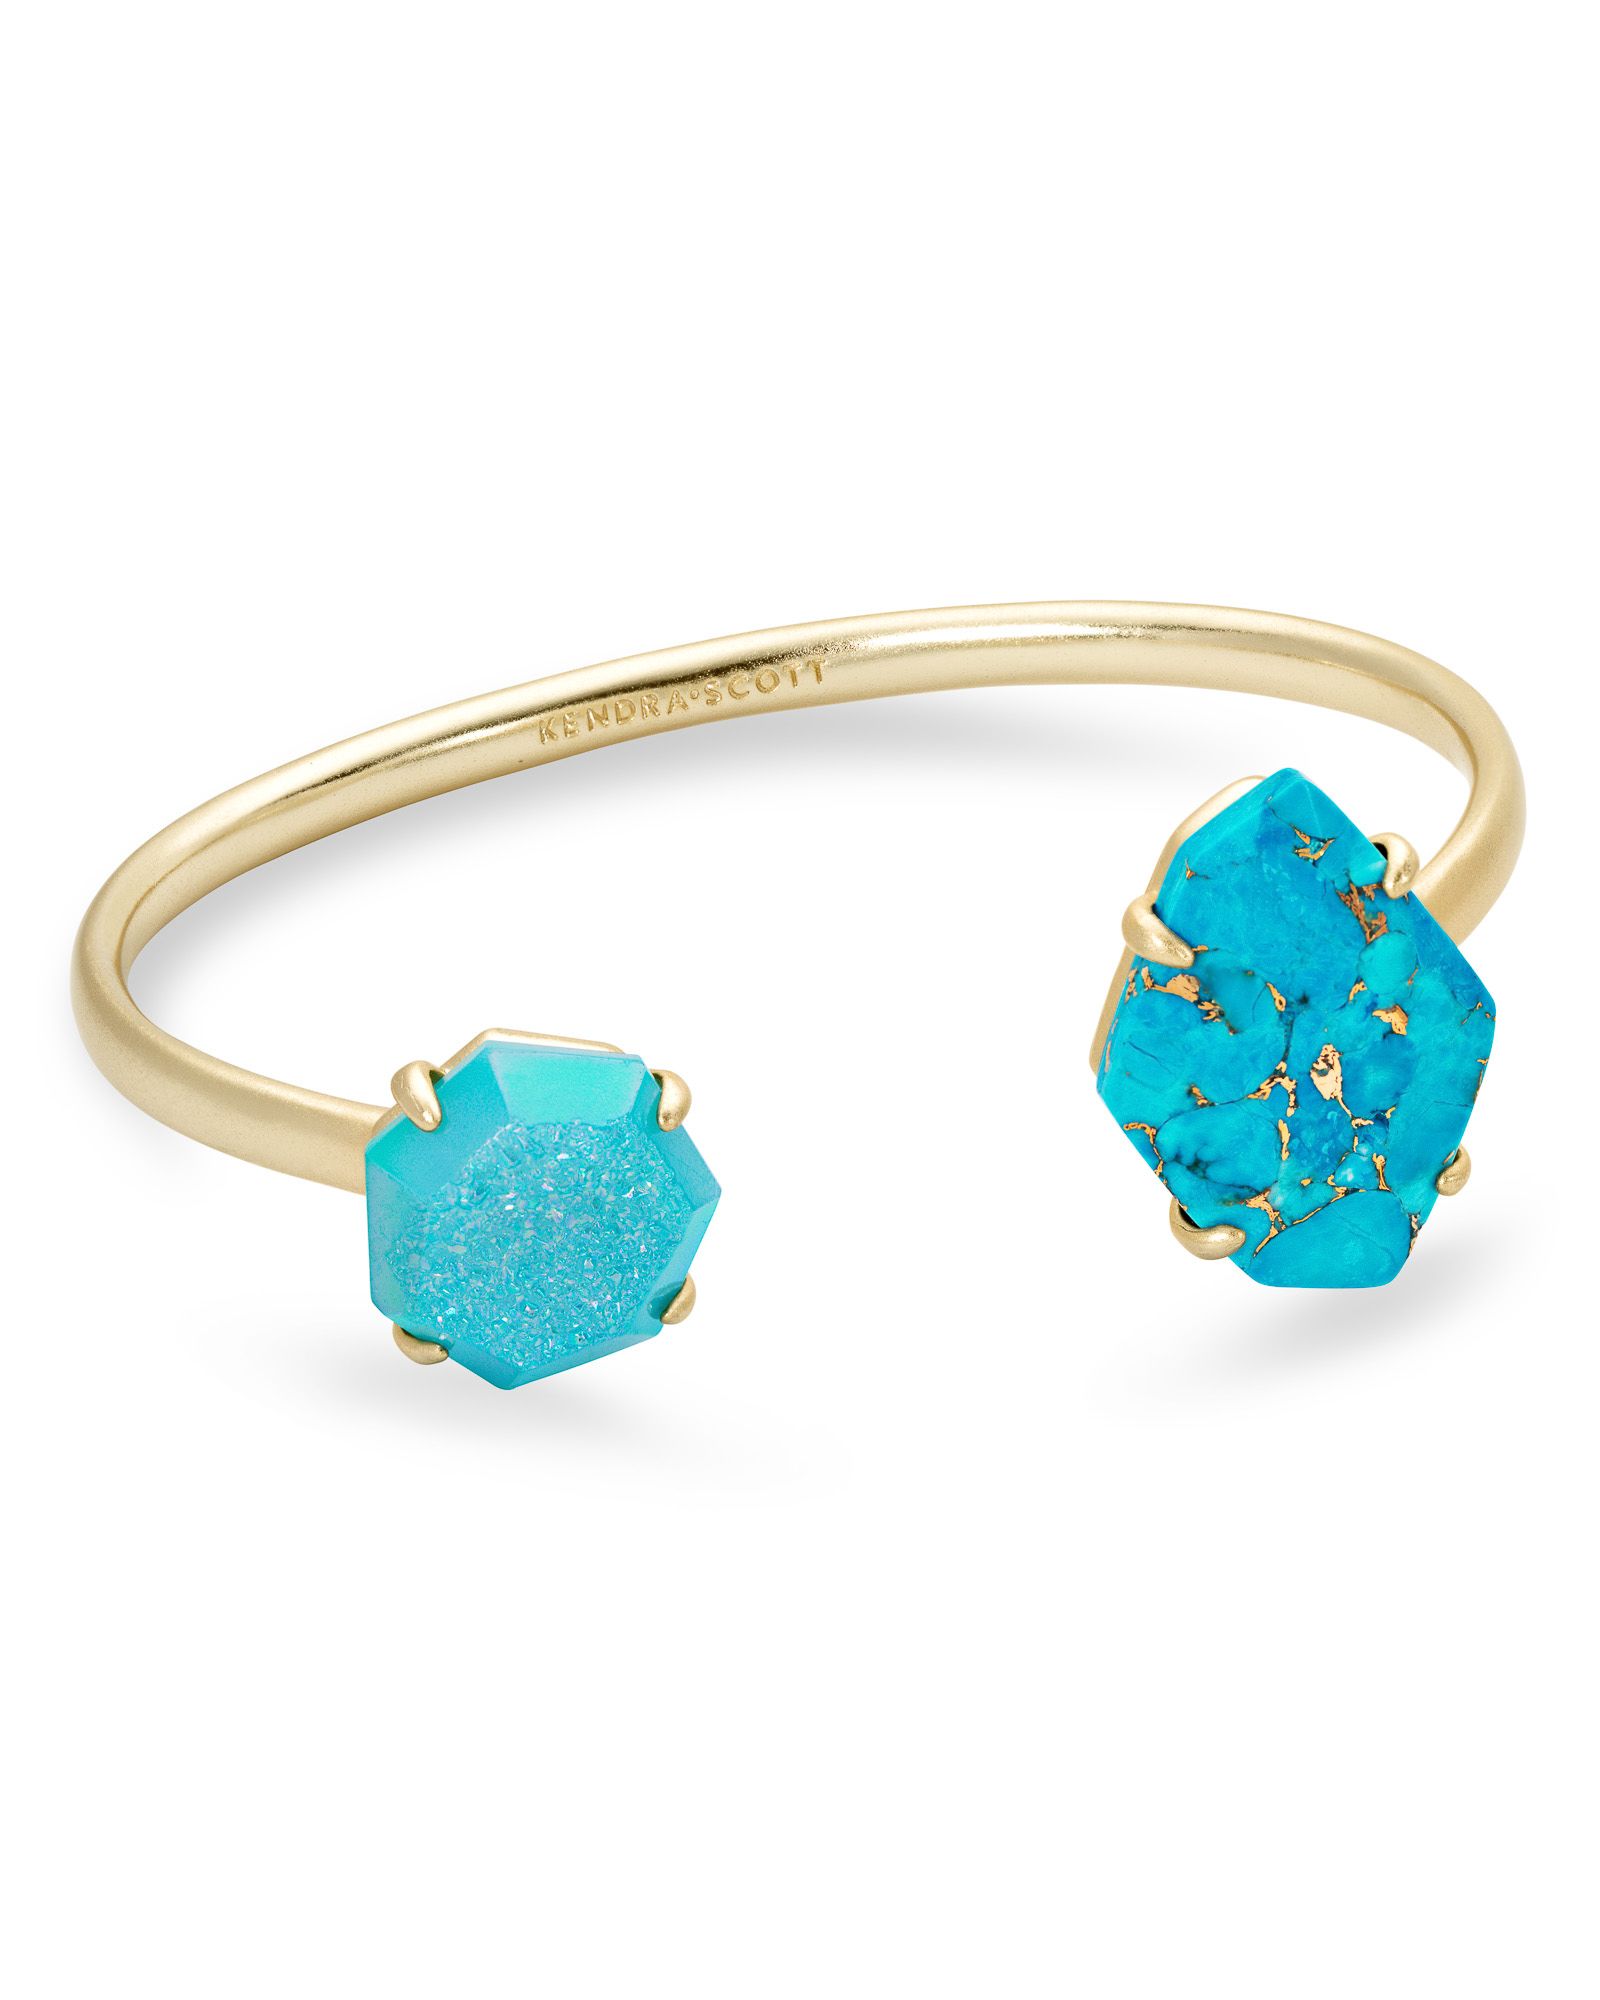 Cynthia Gold Cuff Bracelet in Blue Mix | Kendra Scott